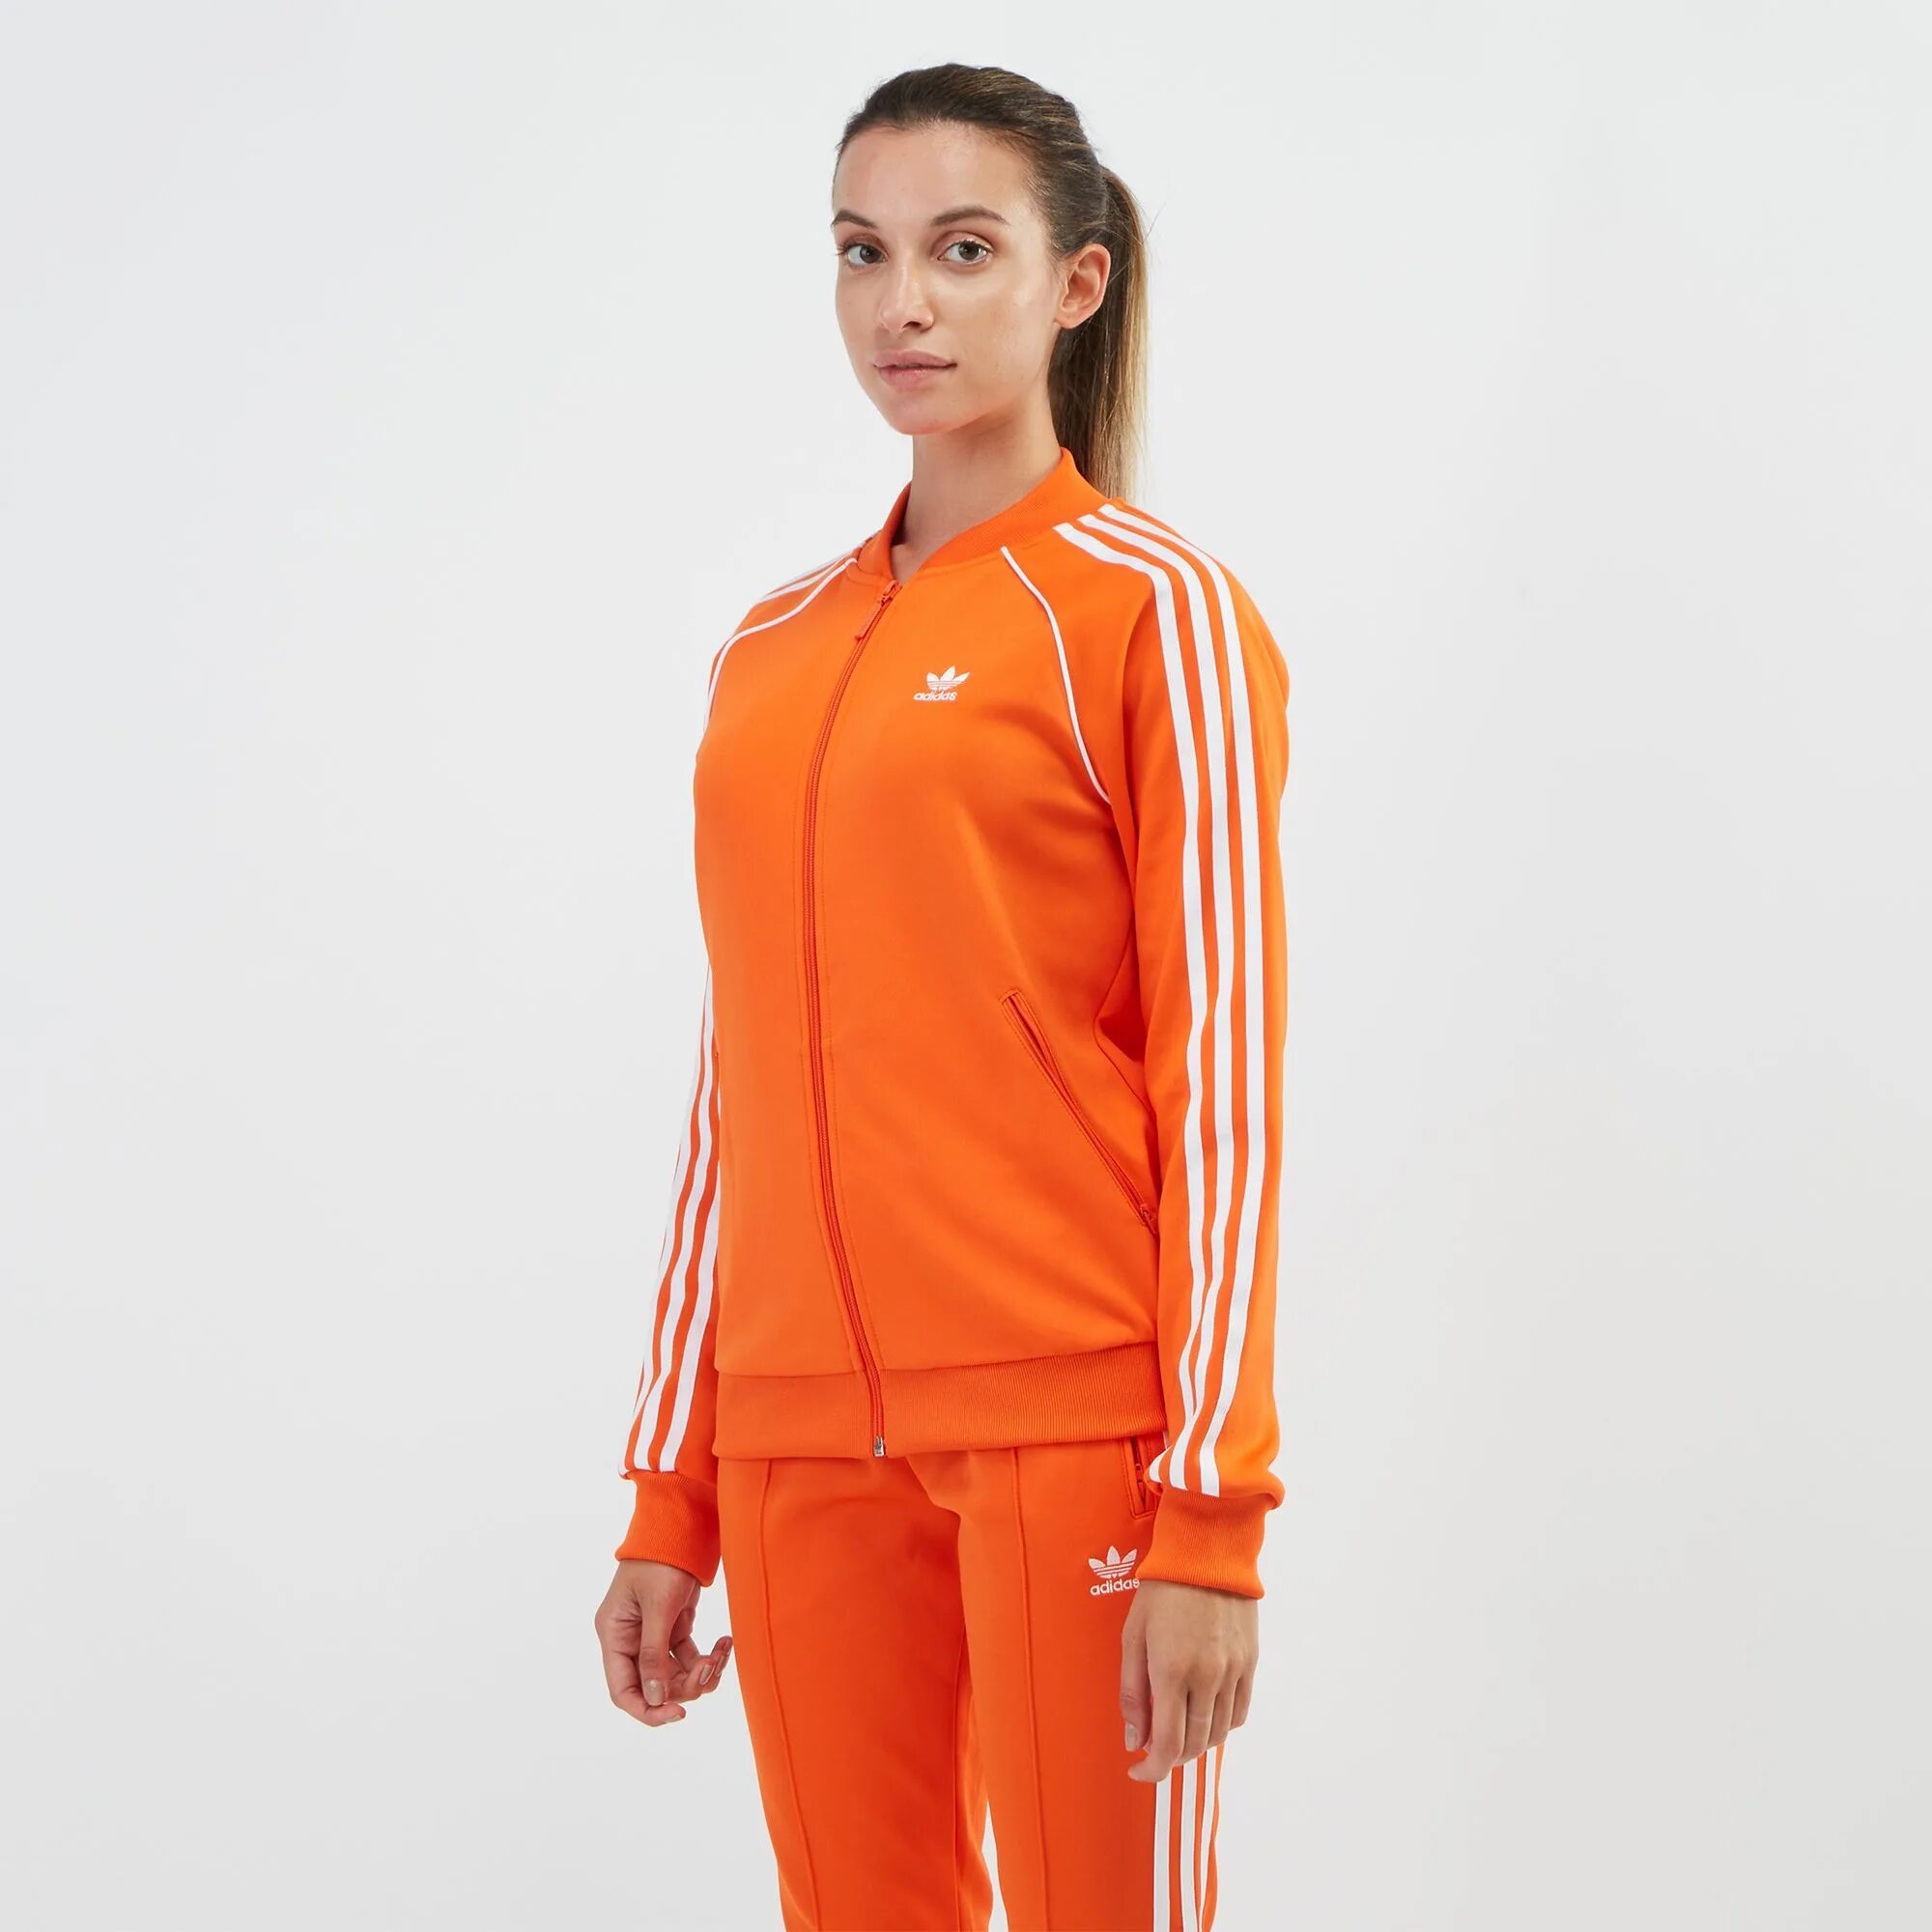 Костюм адидас SST оранжевый. Adidas Originals - Orange Tracksuit. Оранжевый адидас костюм жакет. Адидас оранжевые.